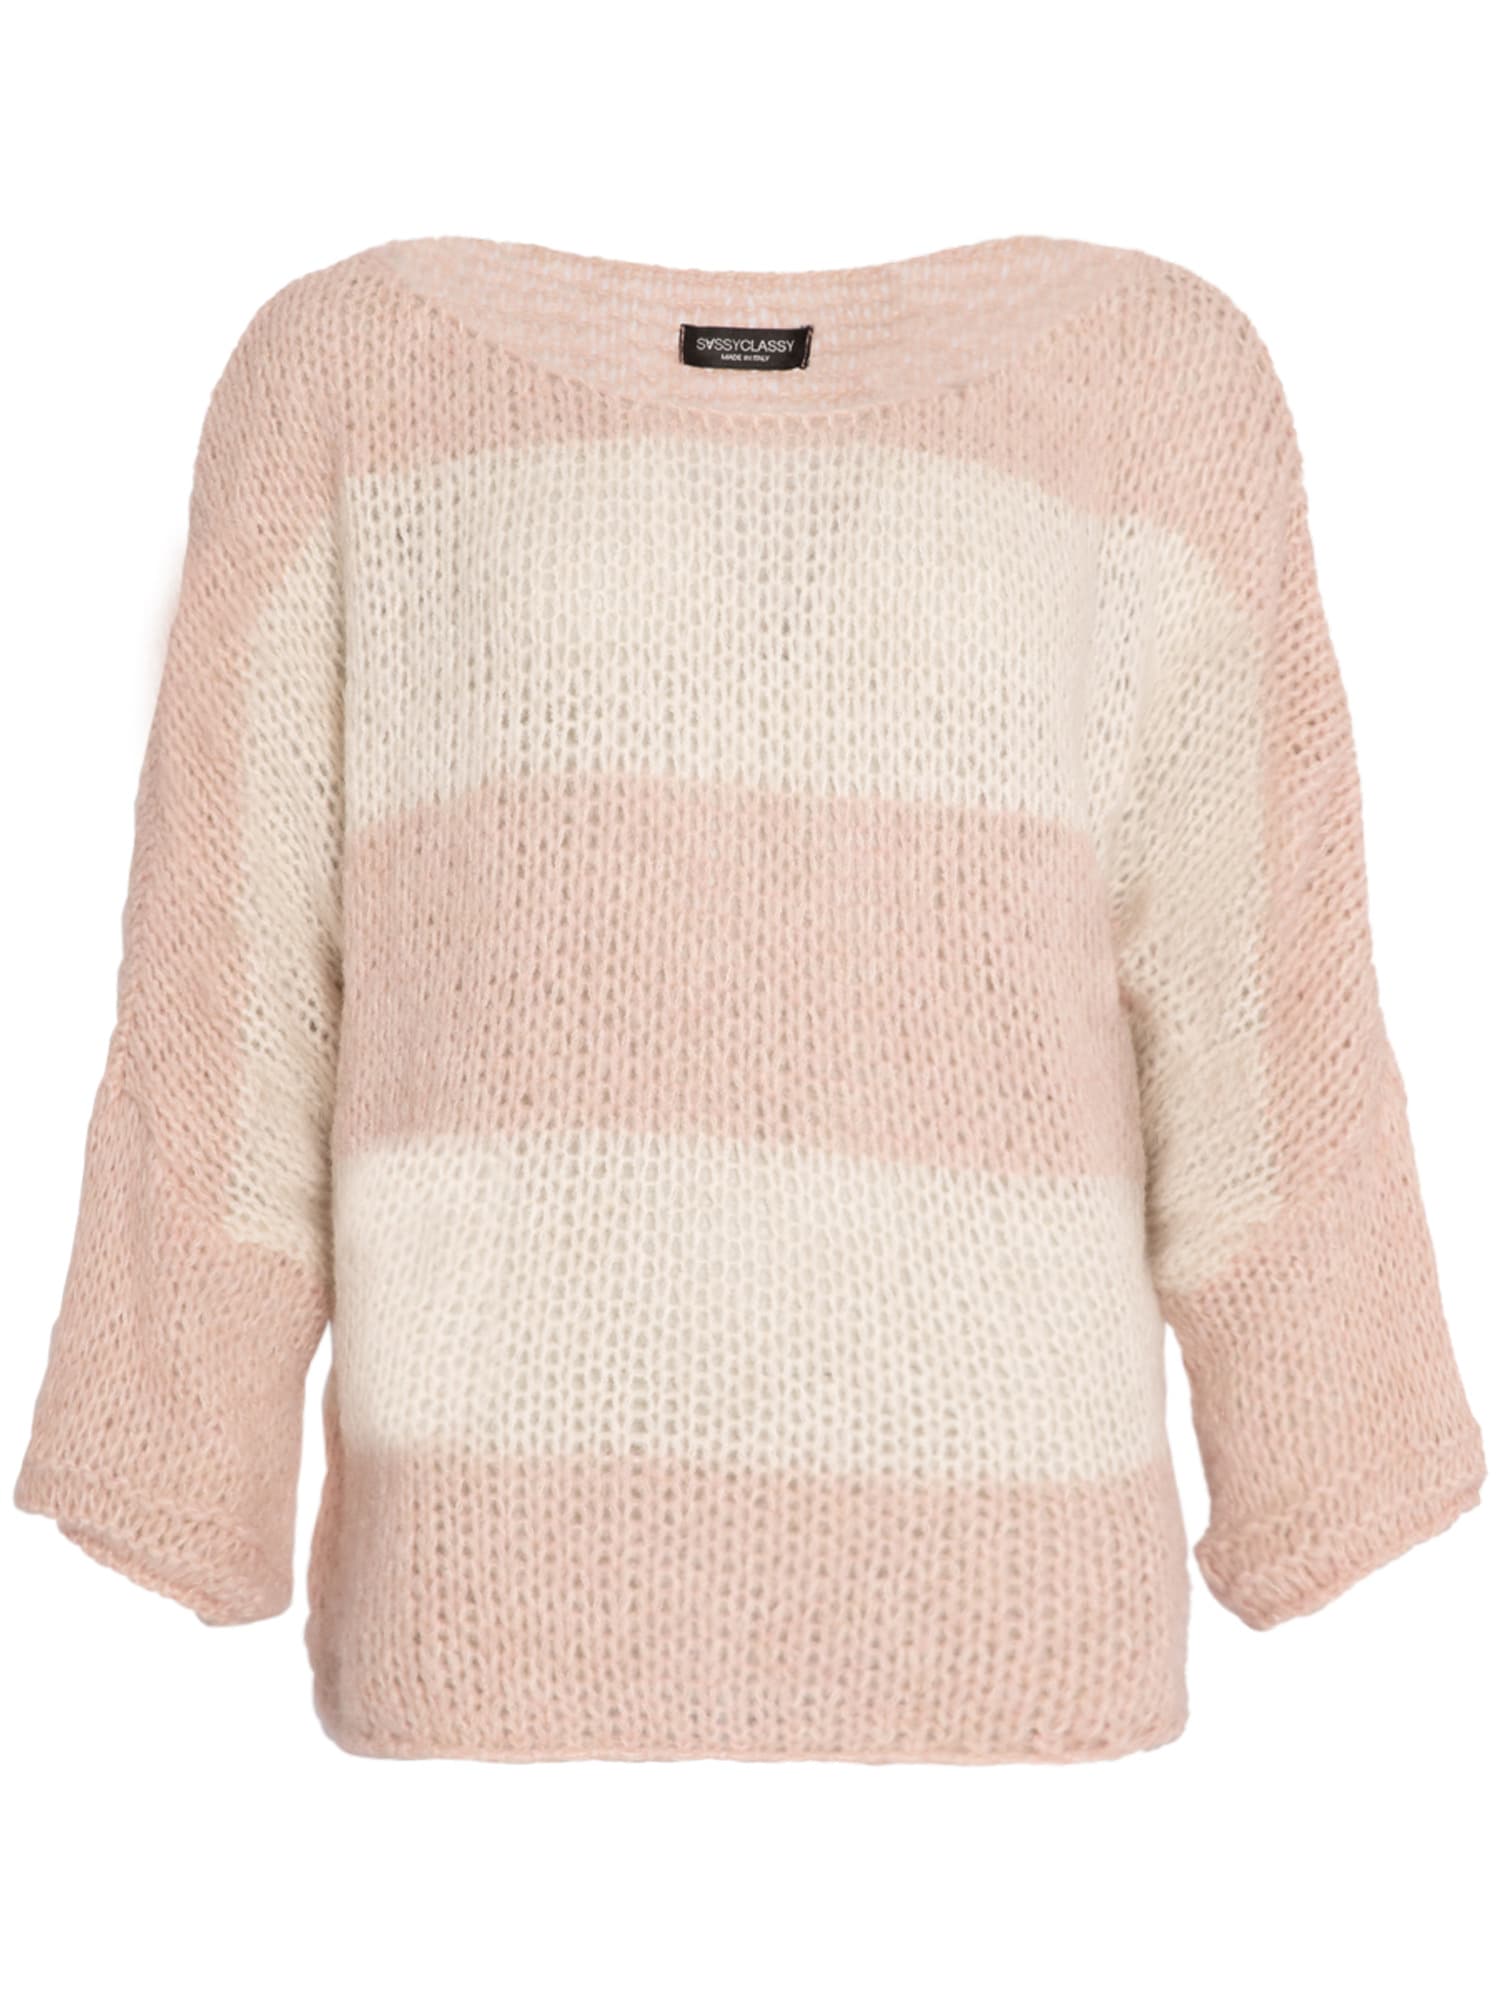 SASSYCLASSY Širok pulover  roza / bela